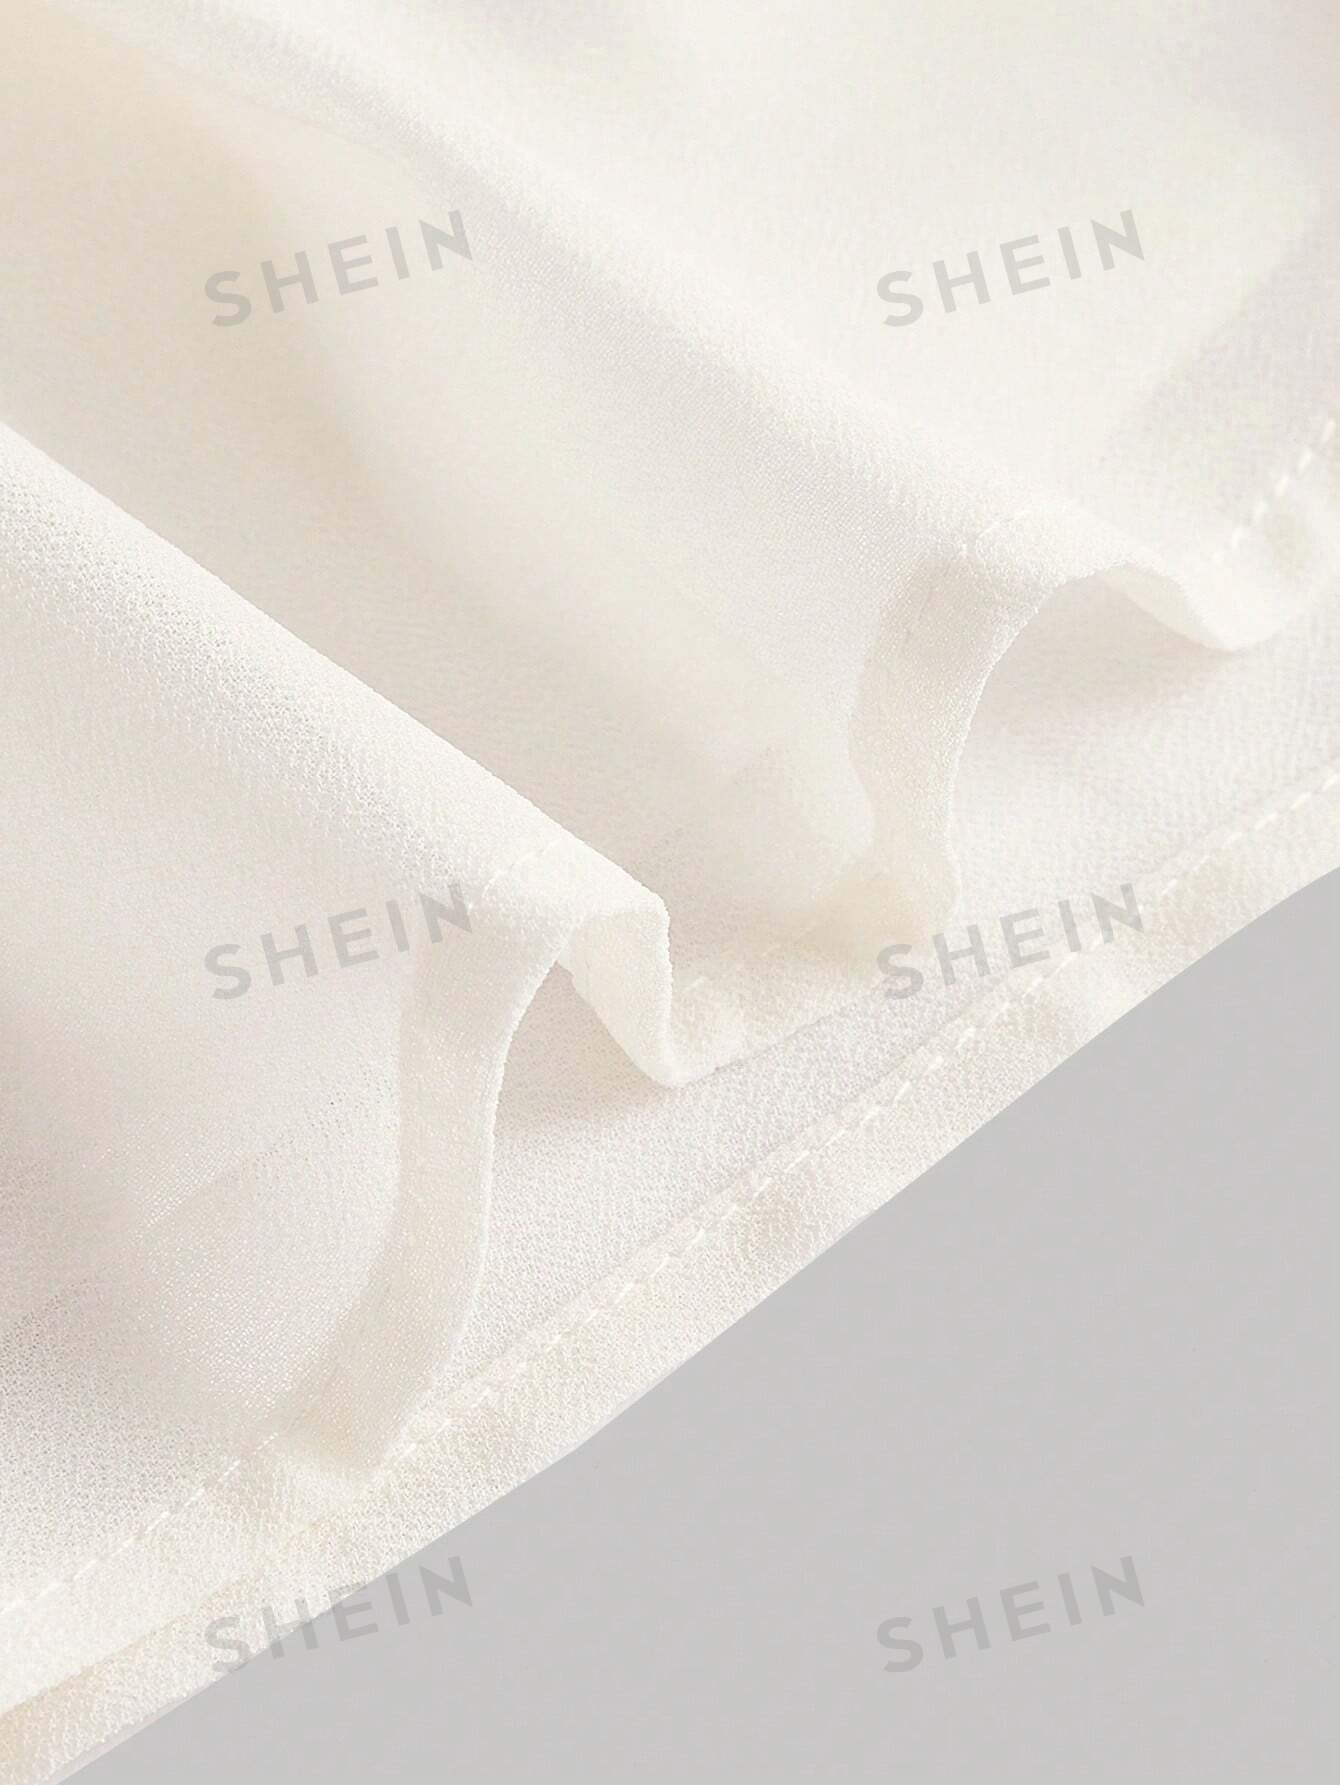 SHEIN MOD SHEIN MOD женская двухслойная мини-юбка с асимметричным подолом и рюшами и присборенной талией, бежевый shein mod белая кружевная декорированная асимметричная юбка с рюшами по подолу белый